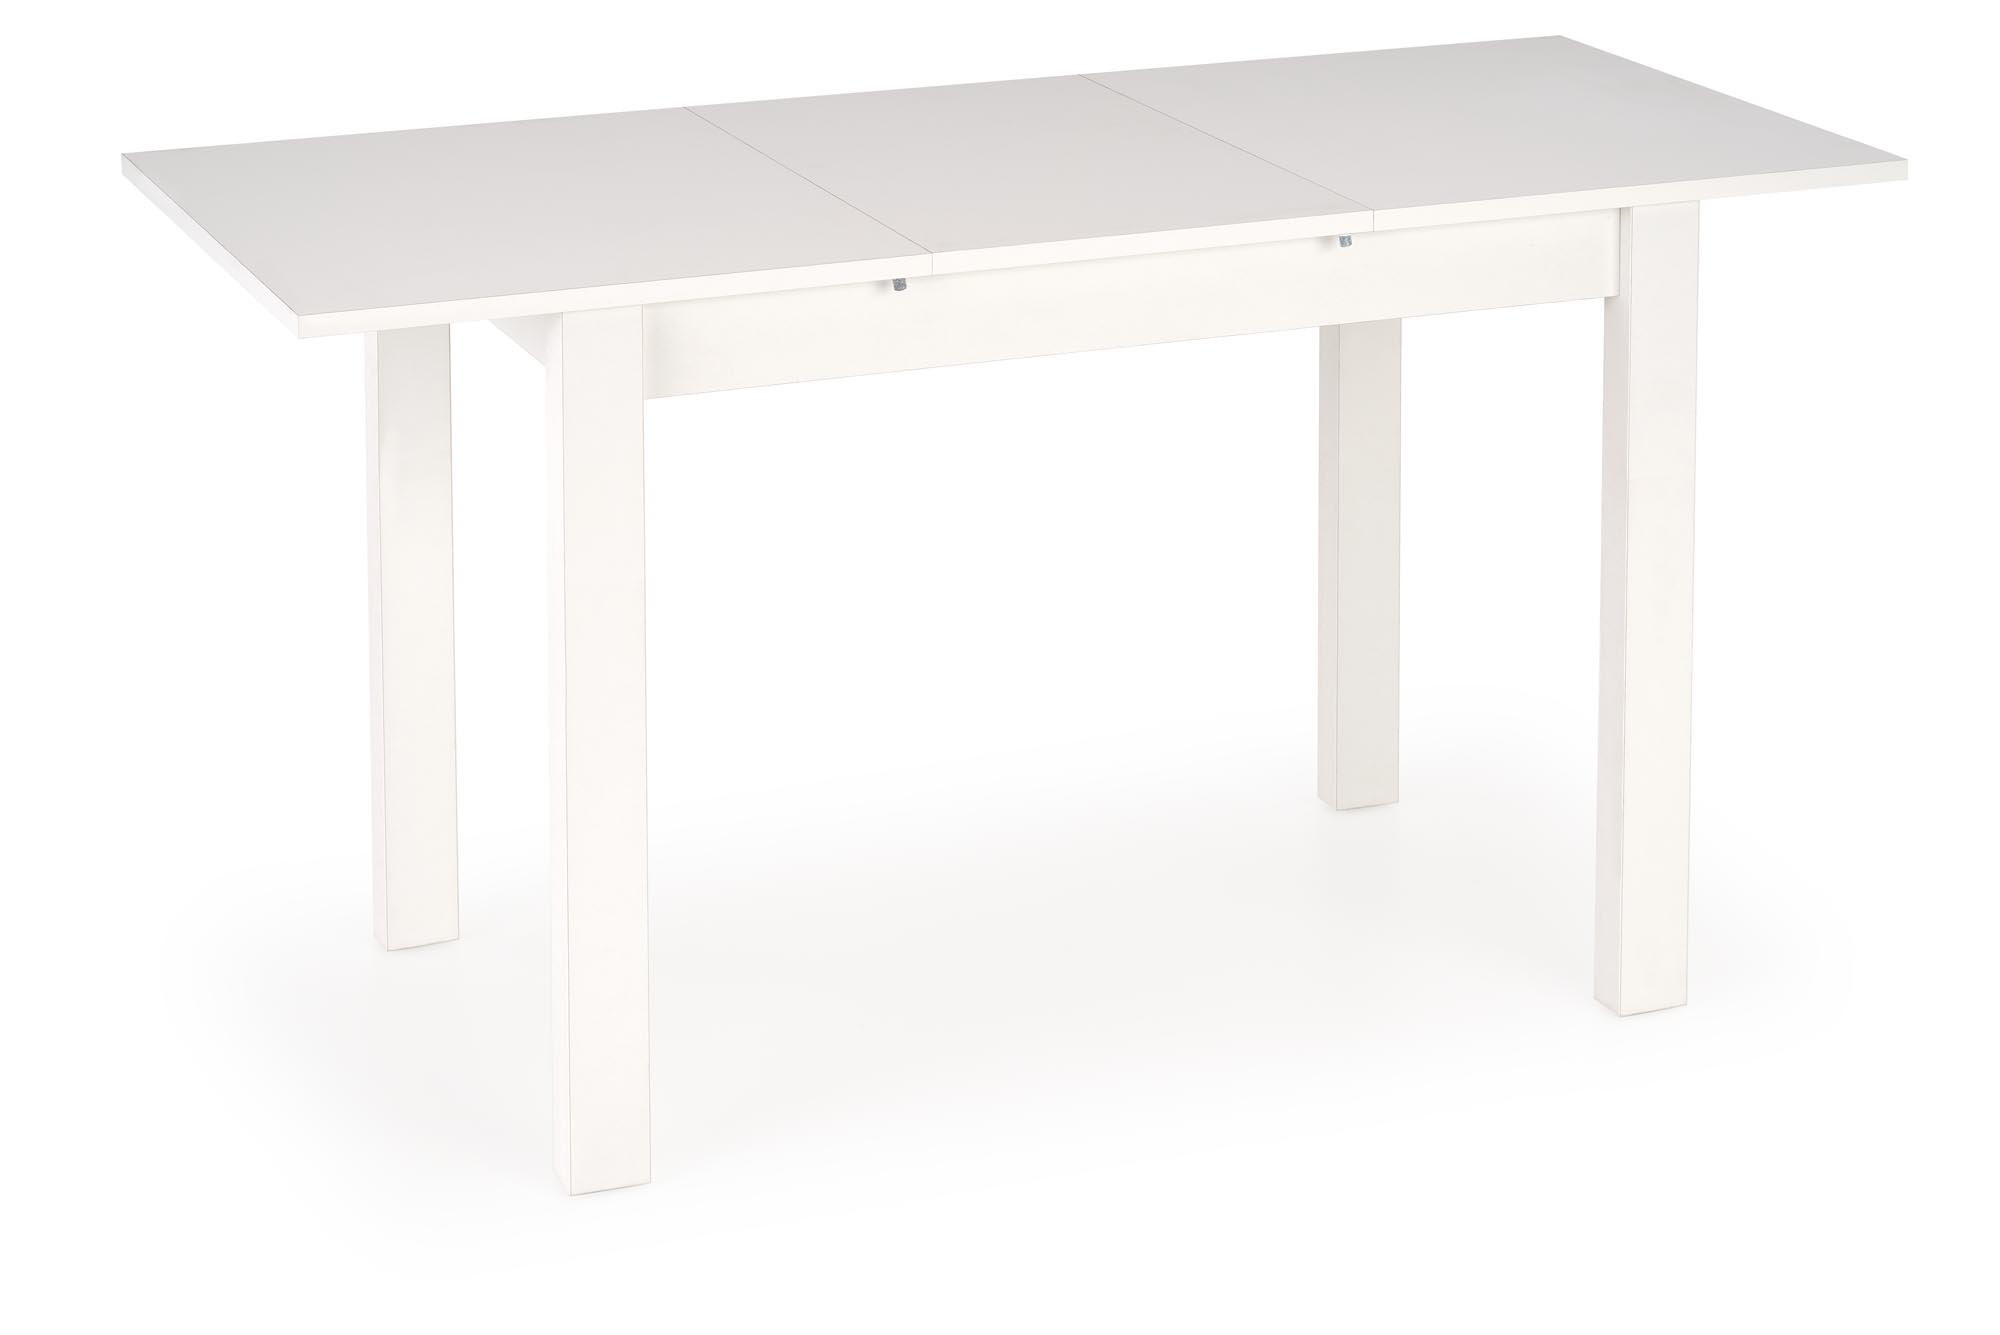 GINO stół rozkładany blat - biały, nogi - biały gino stół rozkładany blat - biały, nogi - biały